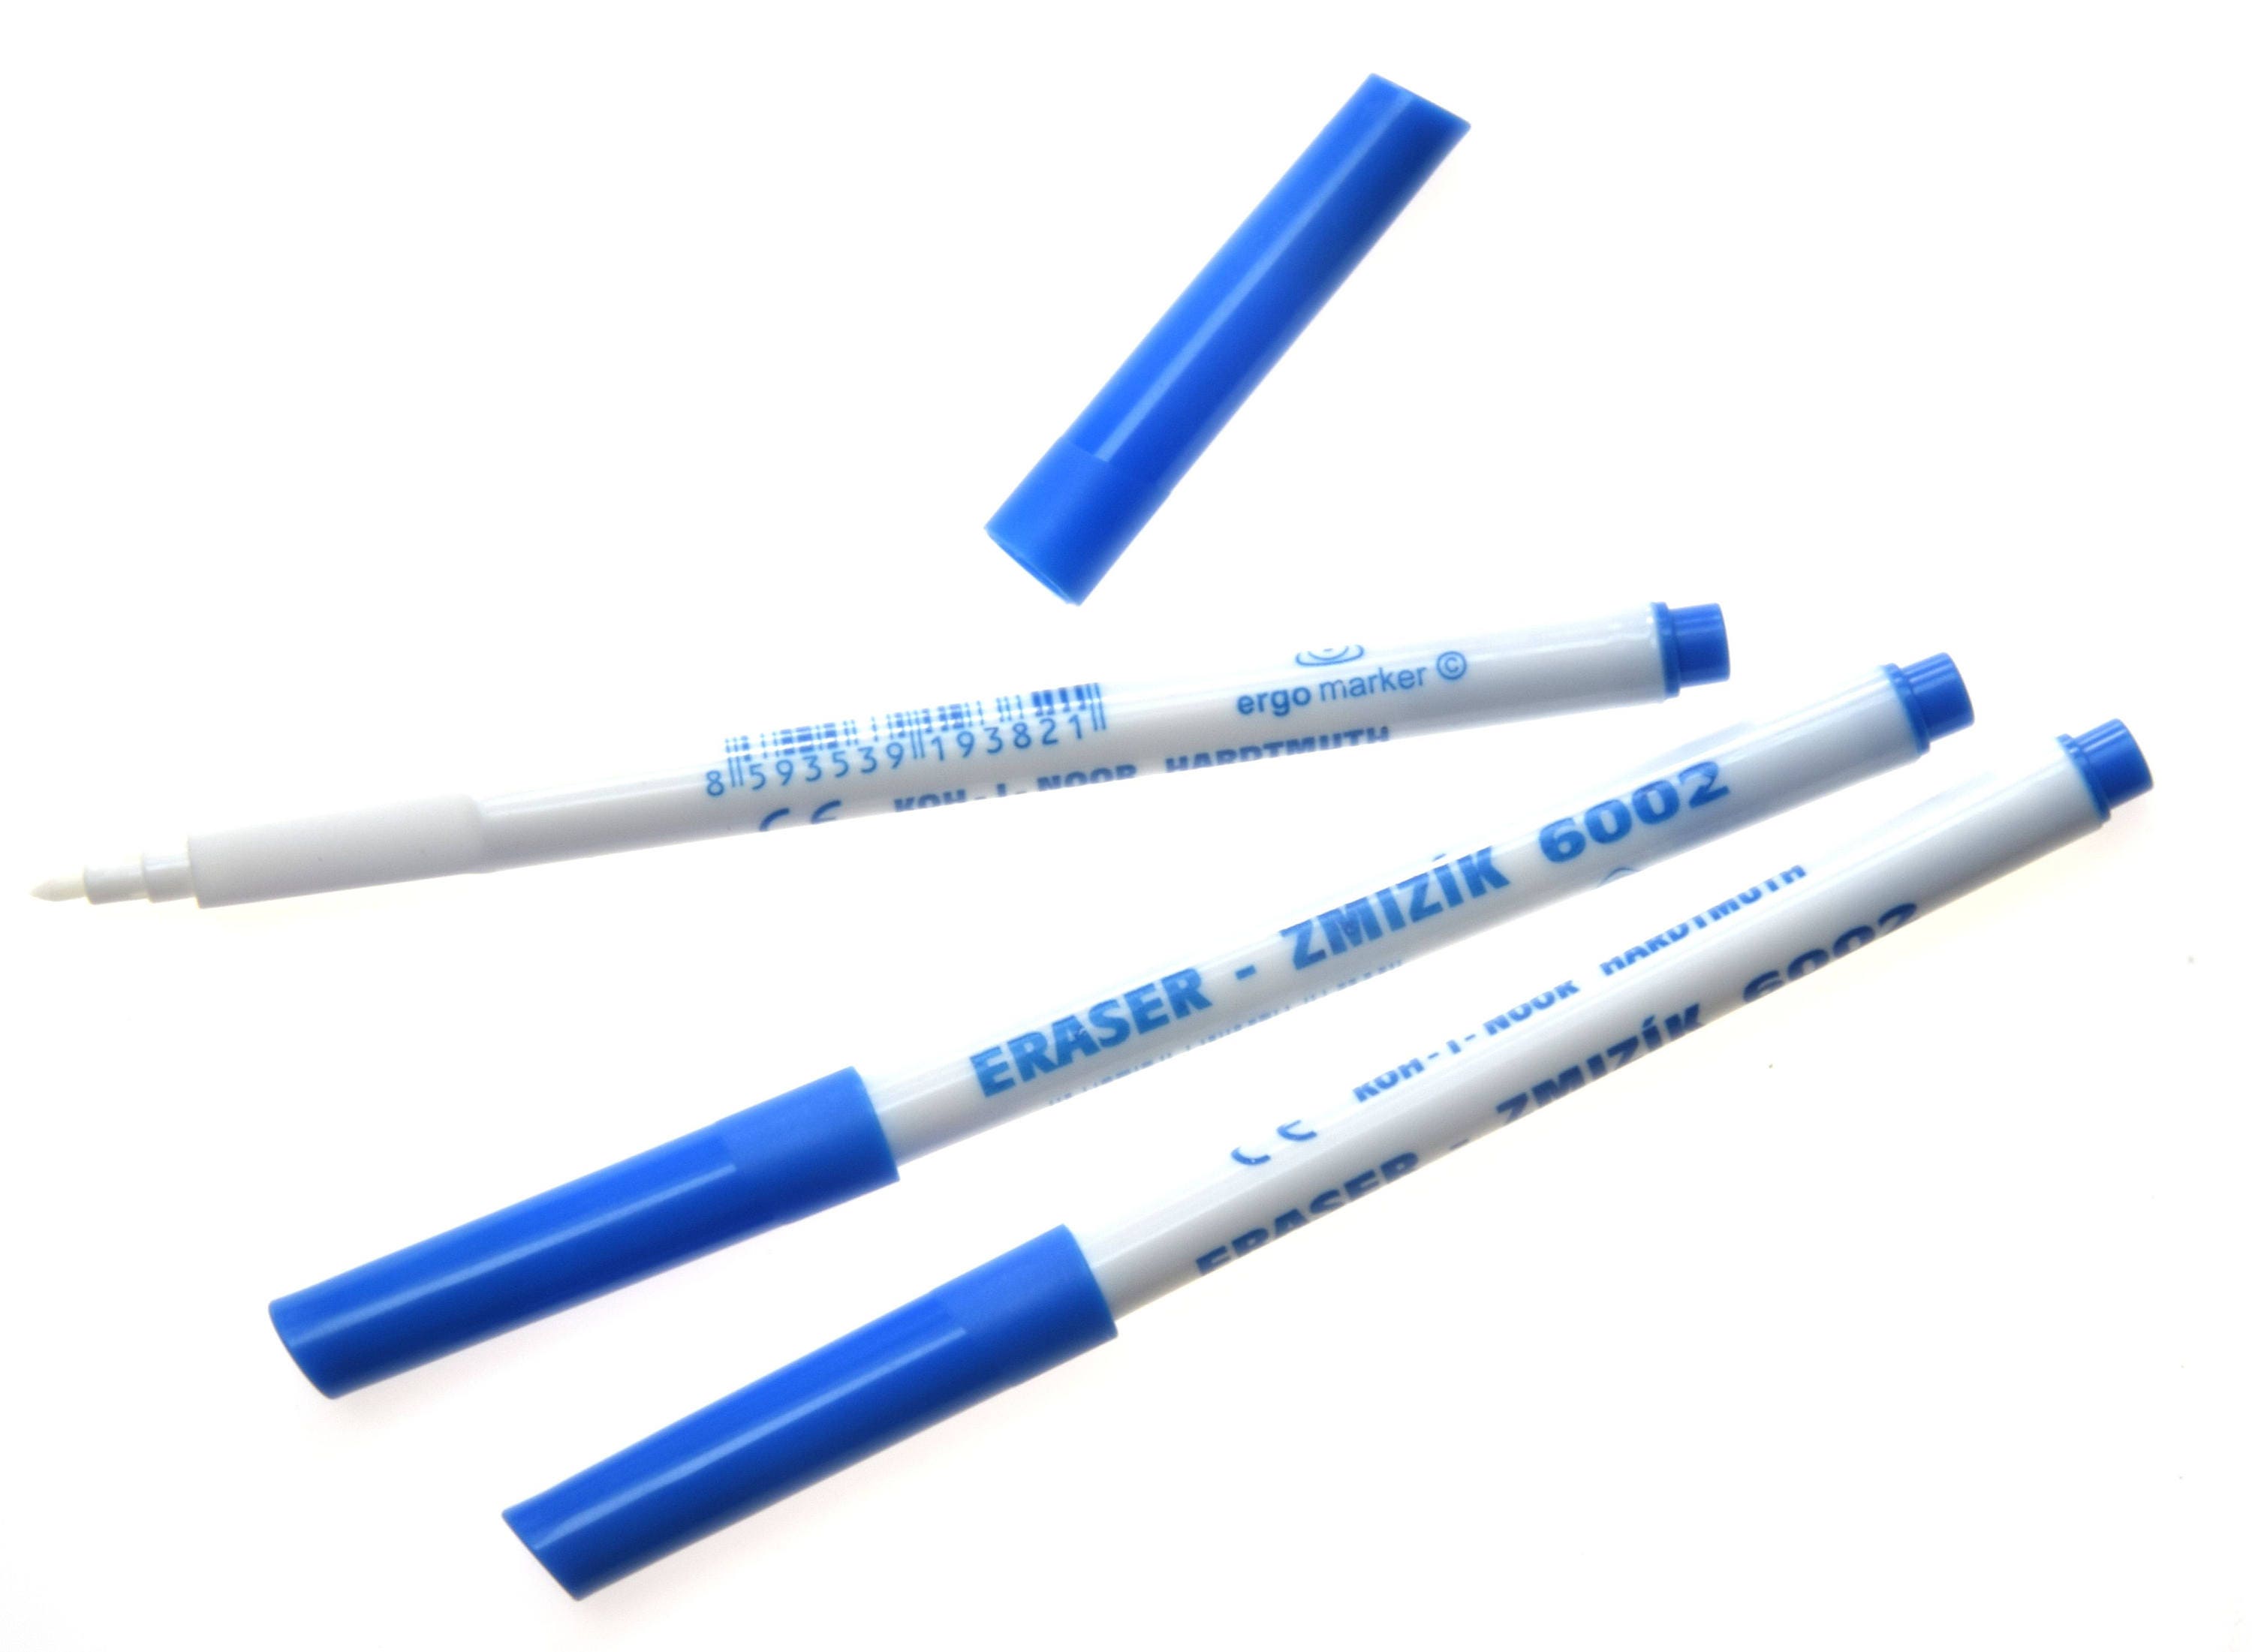 Pencil Rubber Eraser for Graphite Pencils Ink Crayon Koh-i-noor